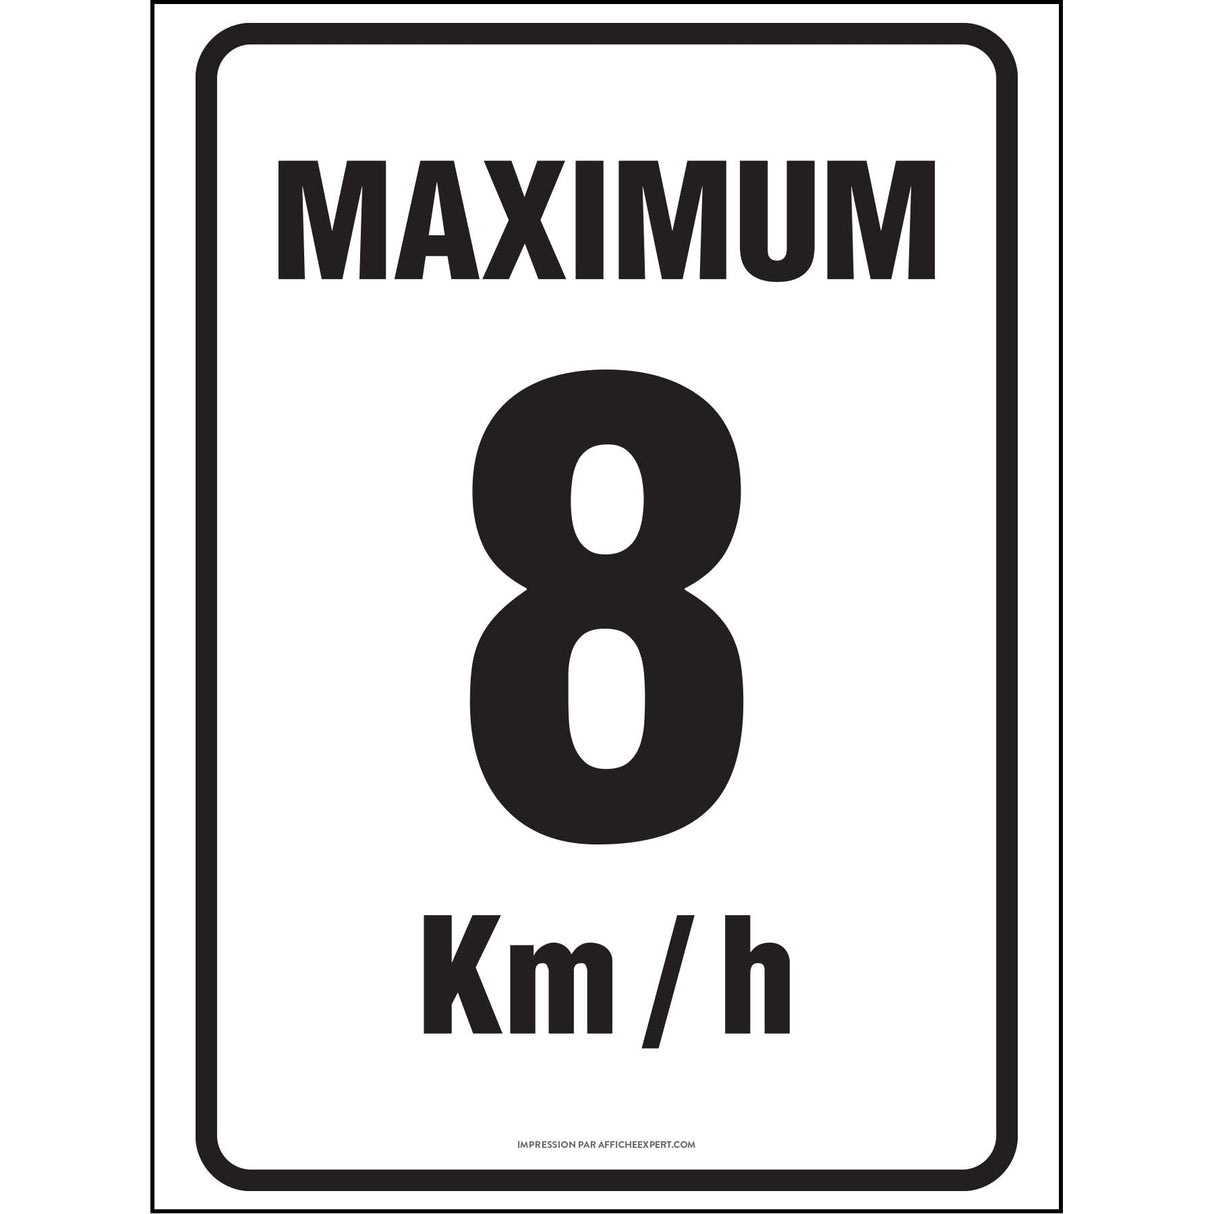 Maximum 8 km/h